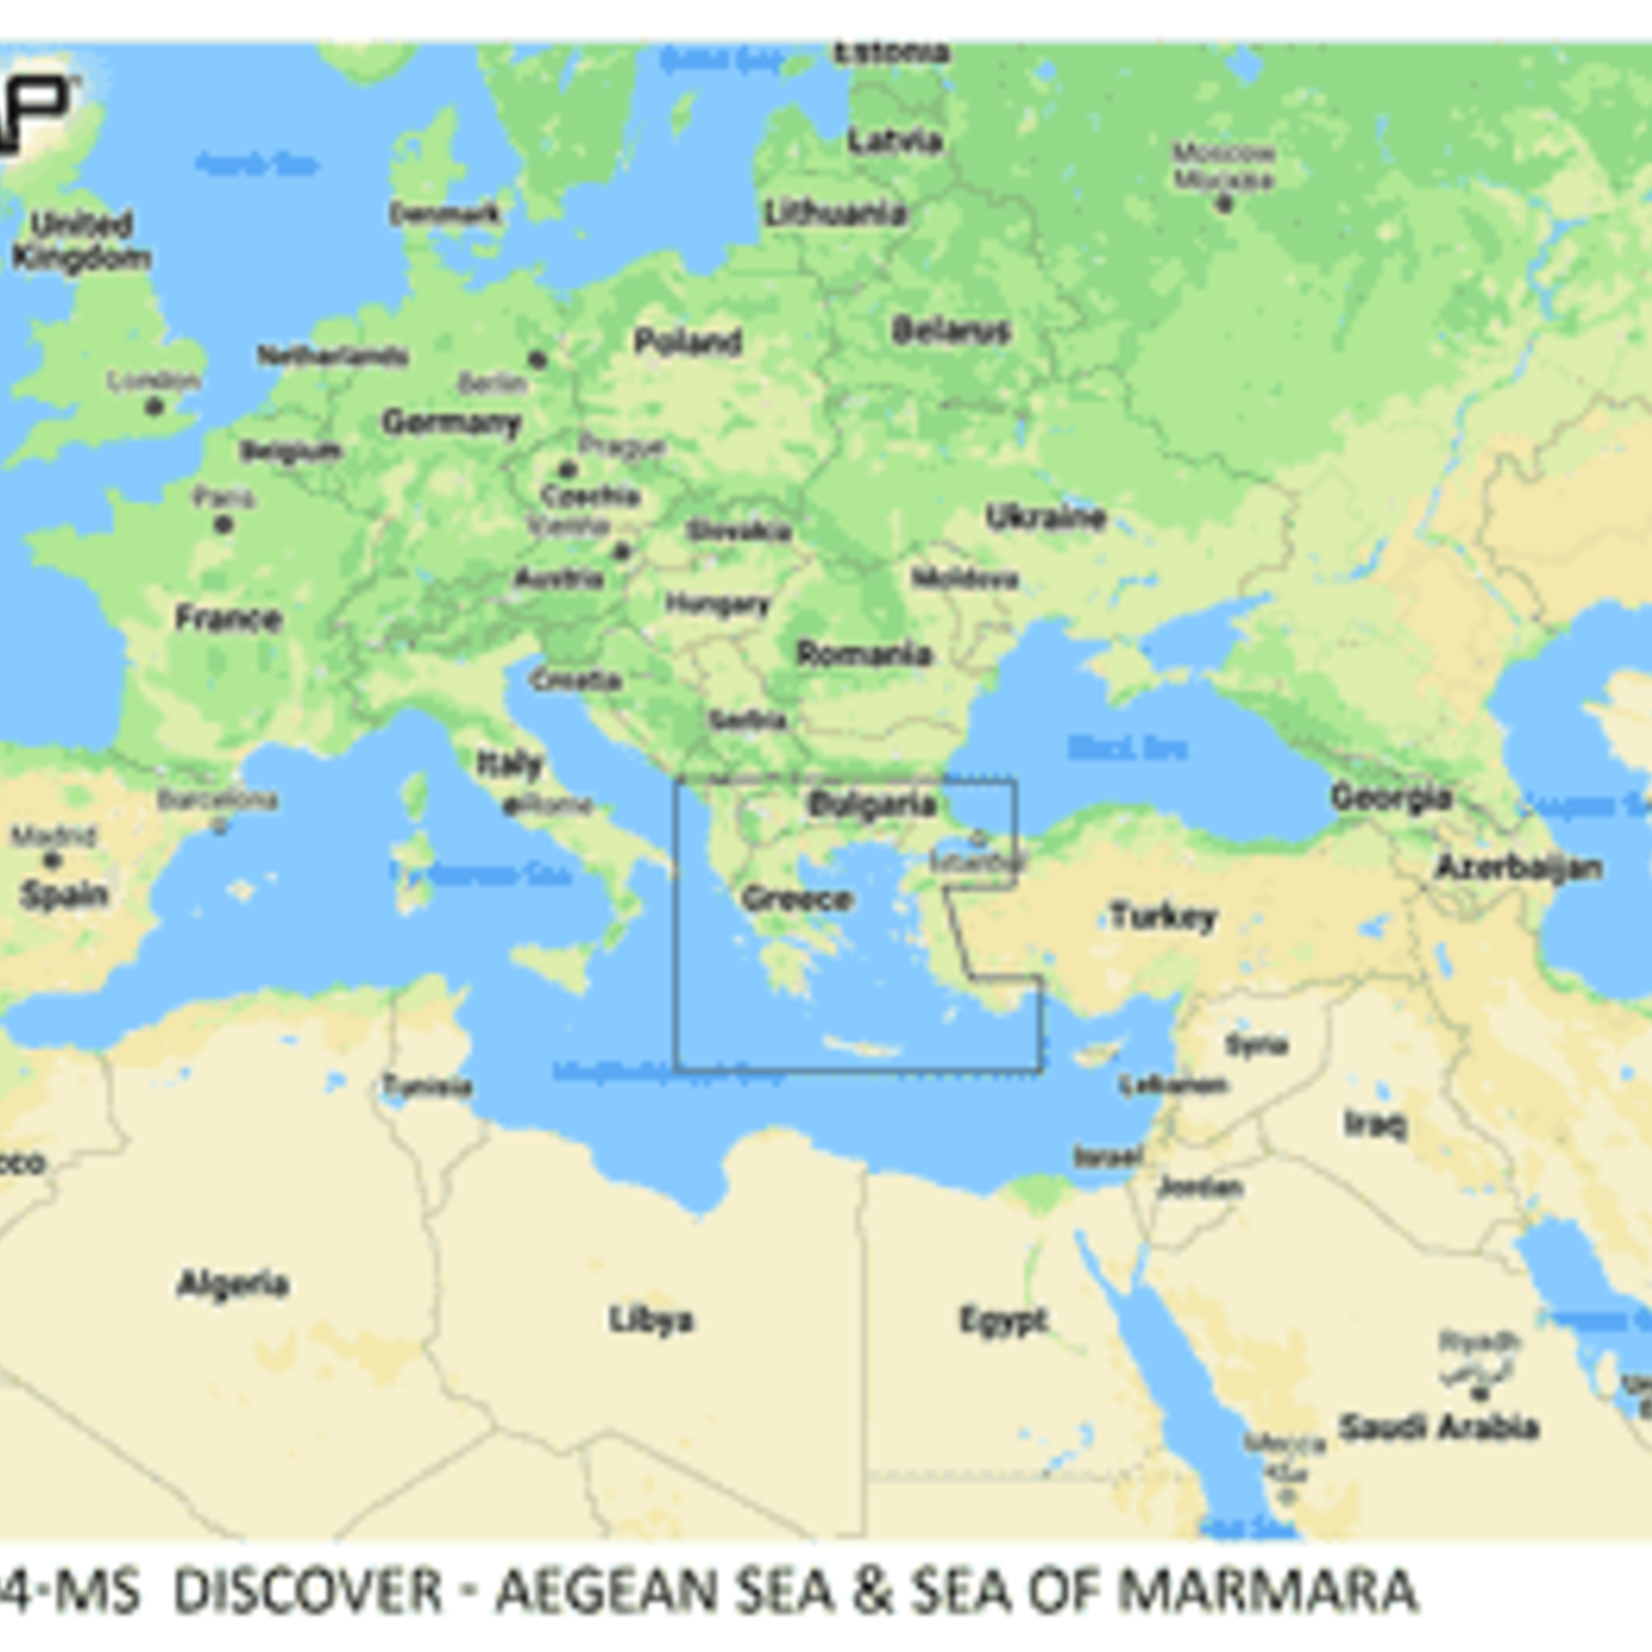 C-MAP DISCOVER - Aegean Sea & Sea of Marmara